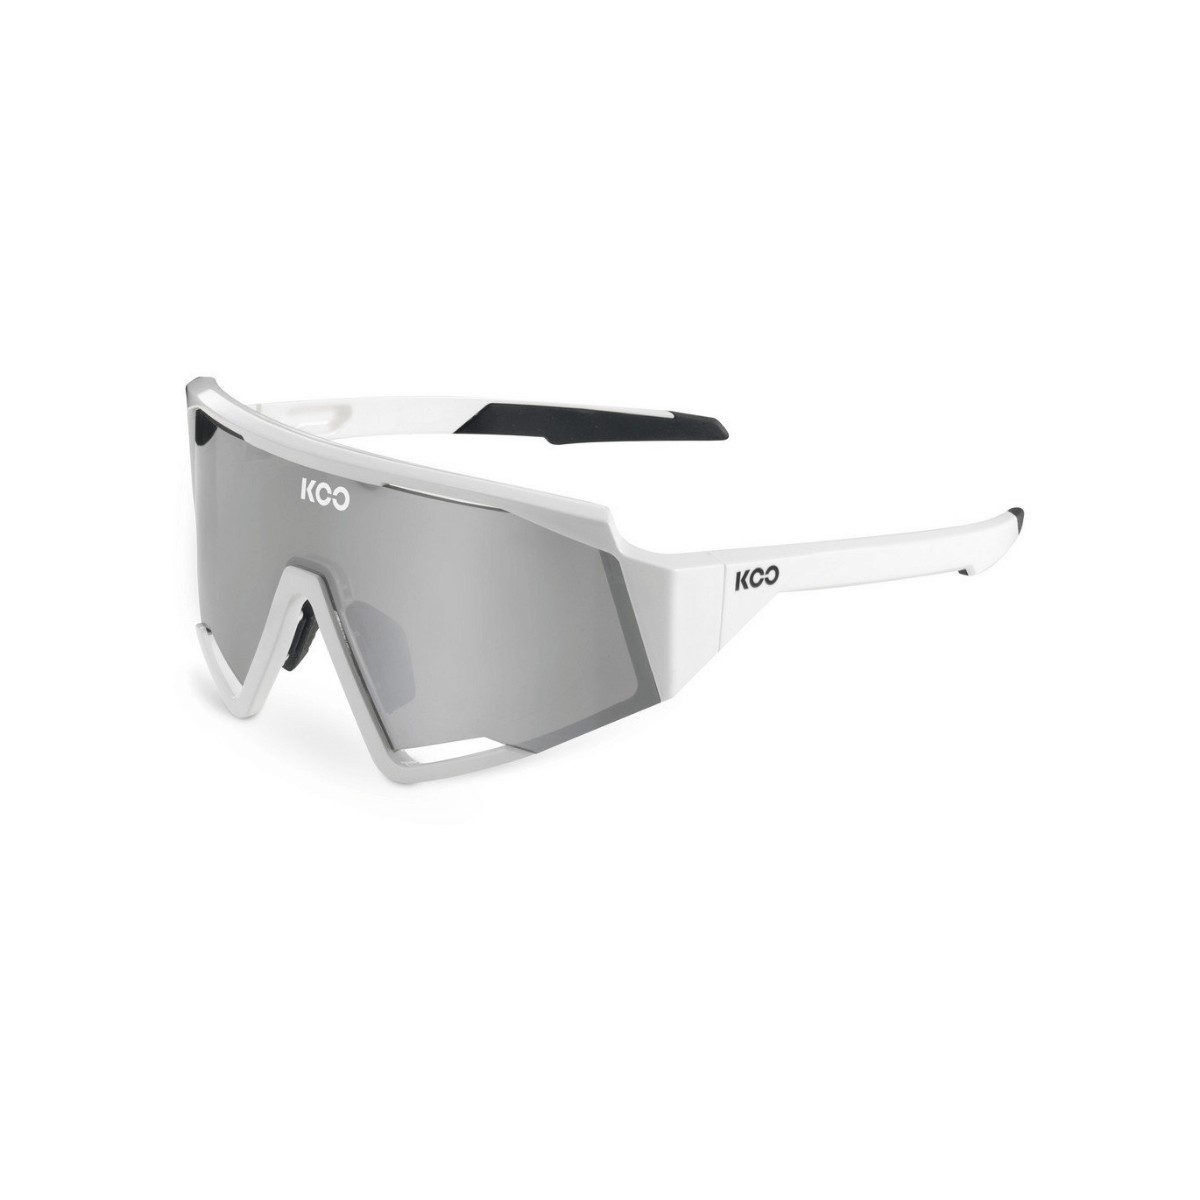 Die X günstig Kaufen-KOO Spectro Brille Weiß Silber Linse. KOO Spectro Brille Weiß Silber Linse <![CDATA[KOO Spectro Sonnenbrille
 Die neue Performance-Brille. Speziell für Geschwindigkeitsliebhaber, Rekordbrecher und Triathleten entwickelt. Entwickelt für